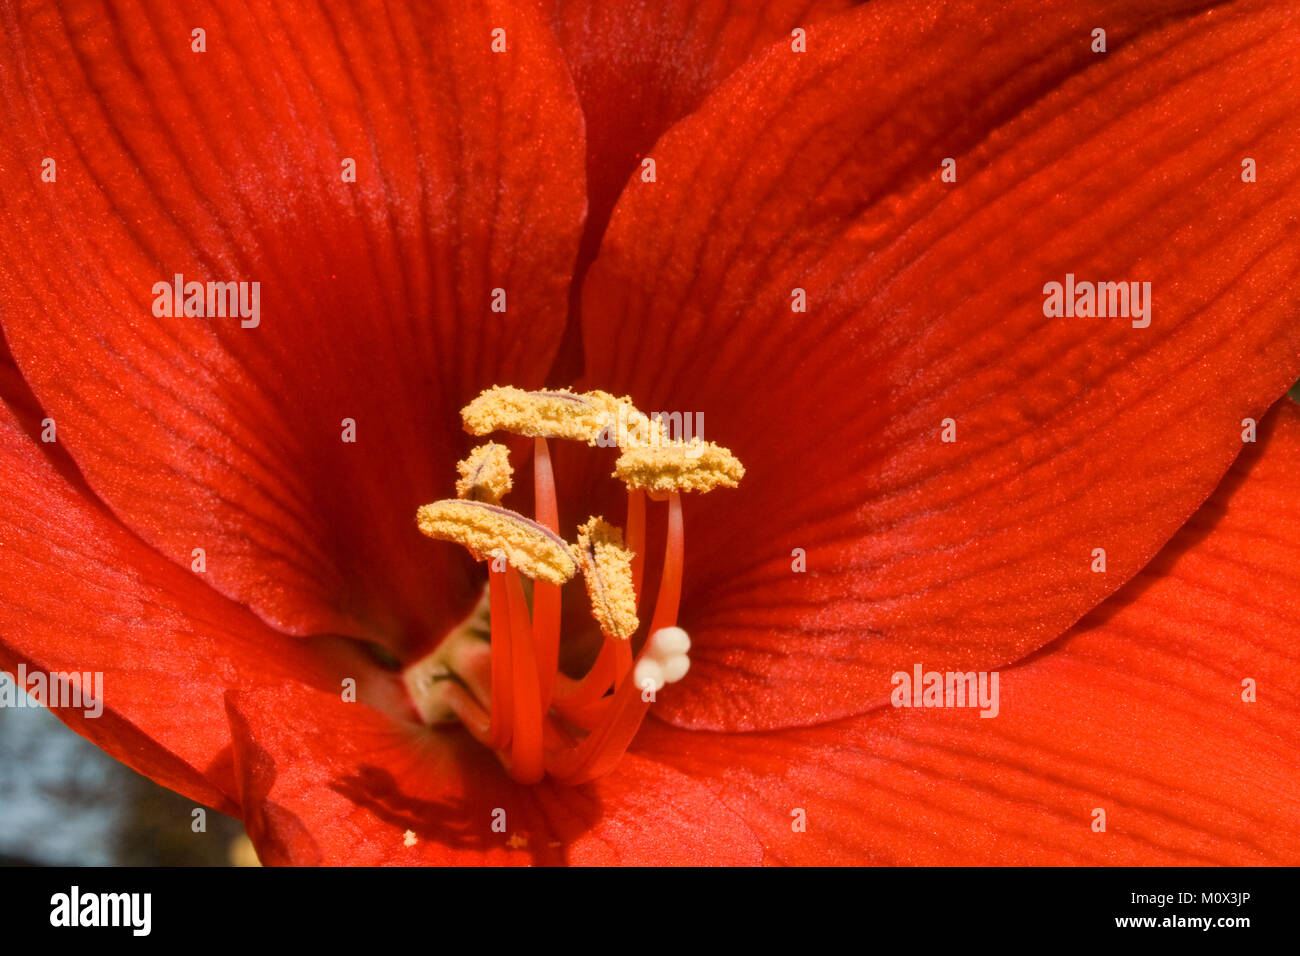 Red Amaryllis Macro Image Stock Photo